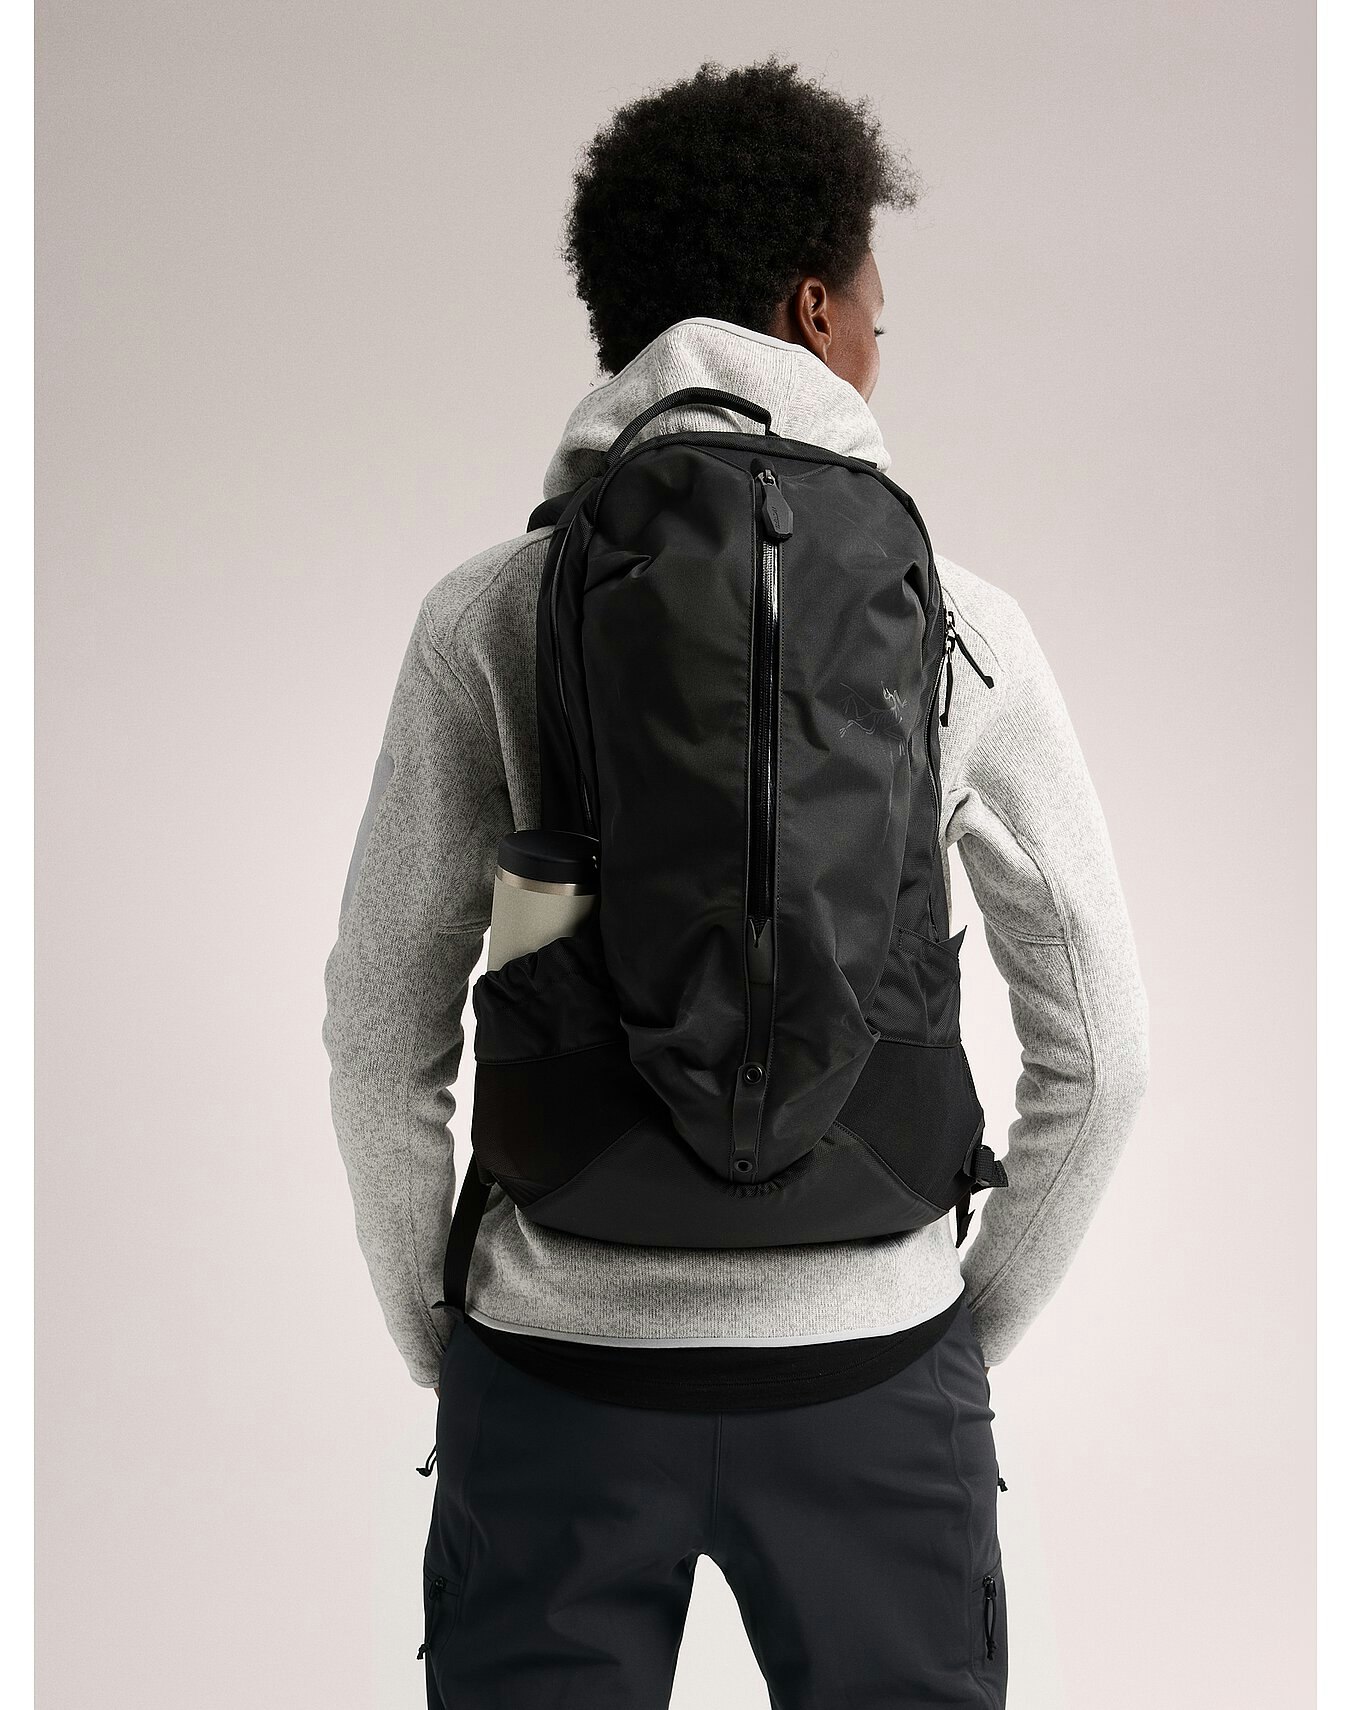 Arro 22 Backpack Black II